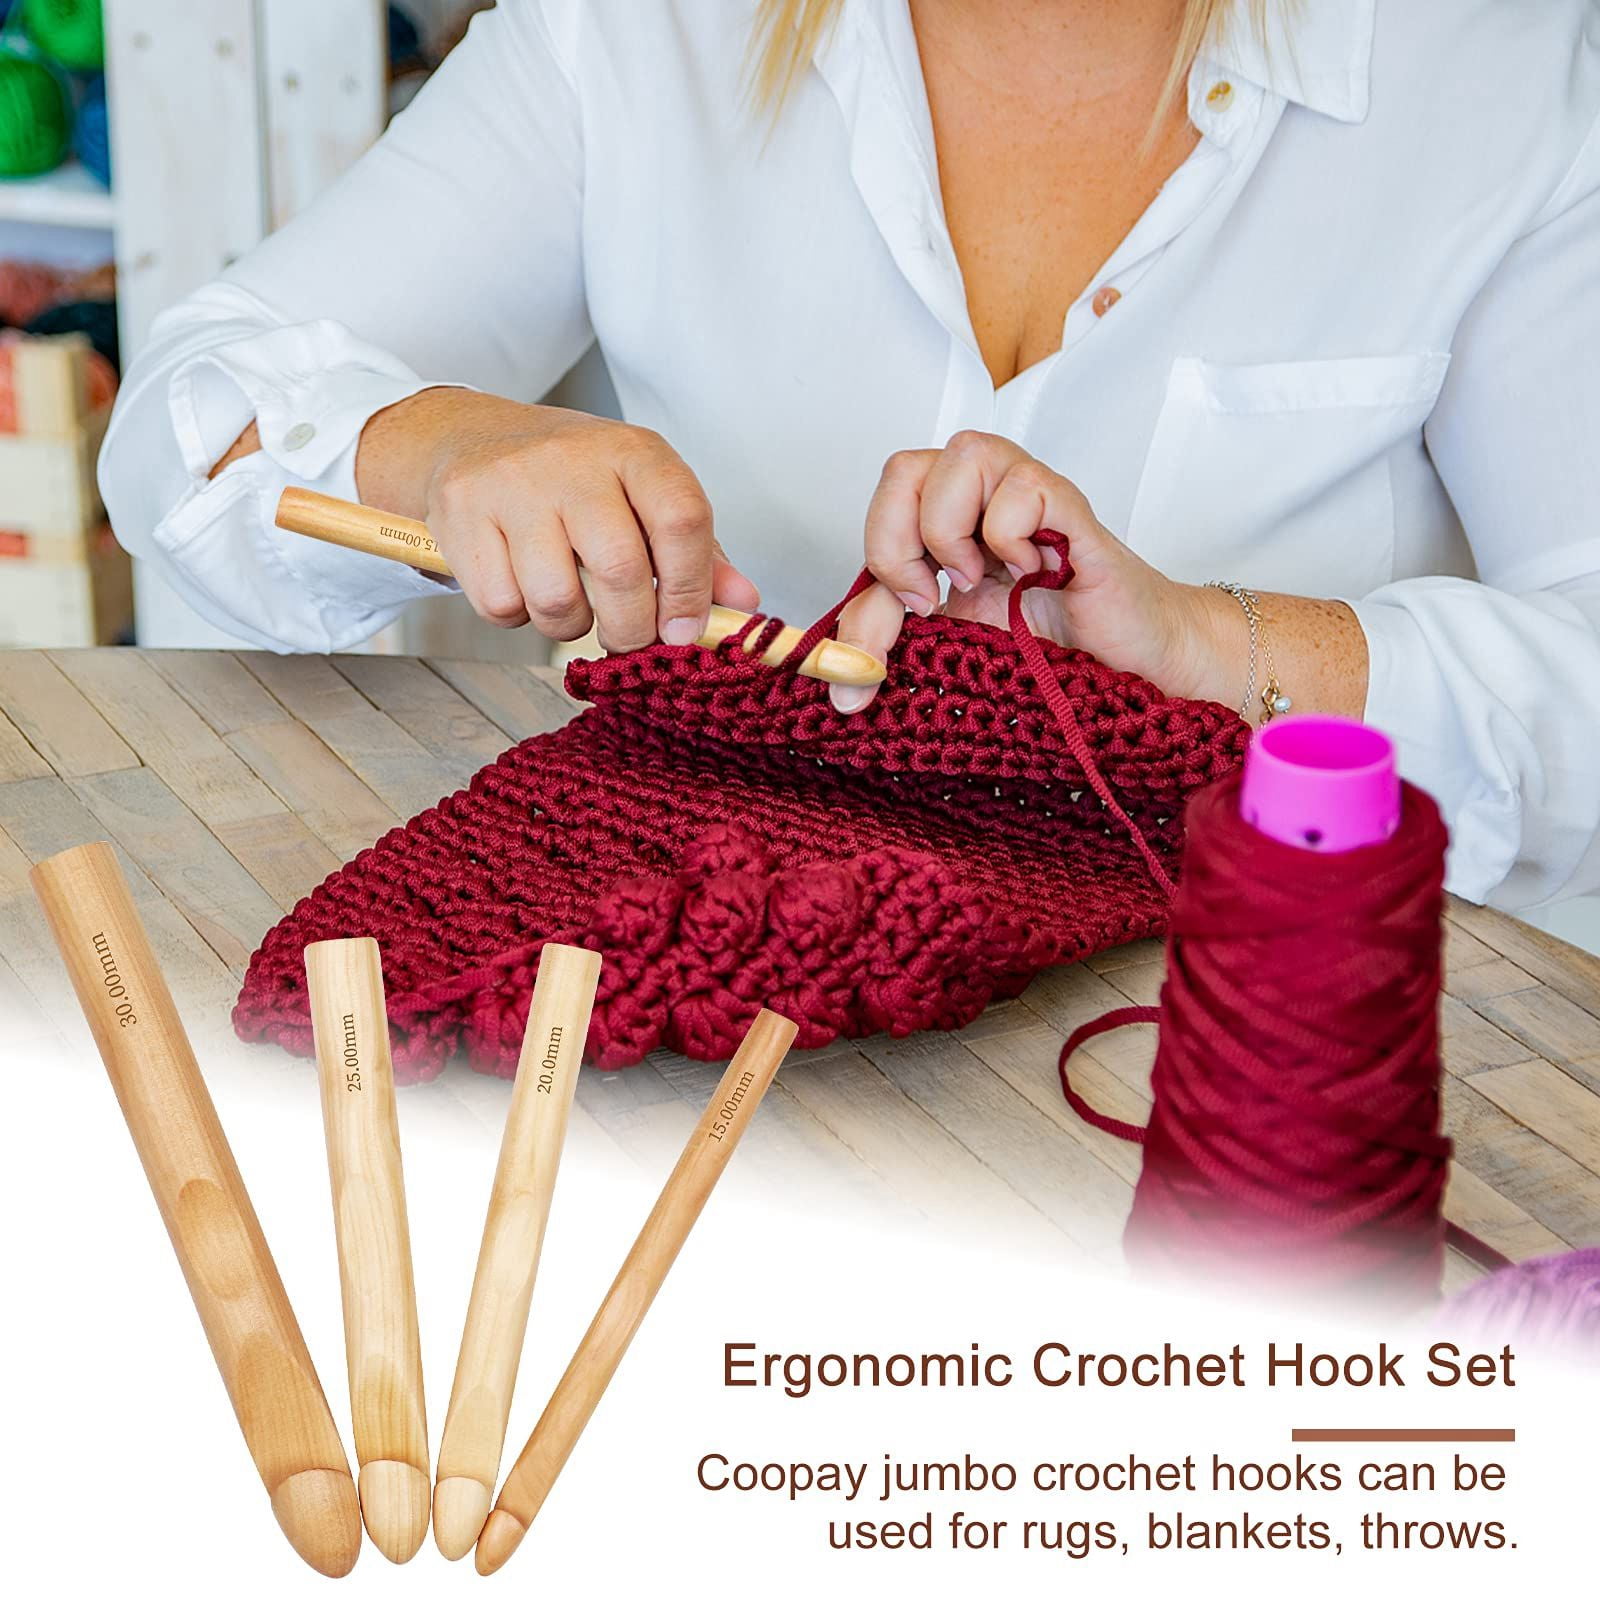 Crochet Hooks 15mm 20mm 25mm 30mm Wooden Crochet Hook Set for Chunky Yarn, Crocheting Huge Crochet Hooks, Other